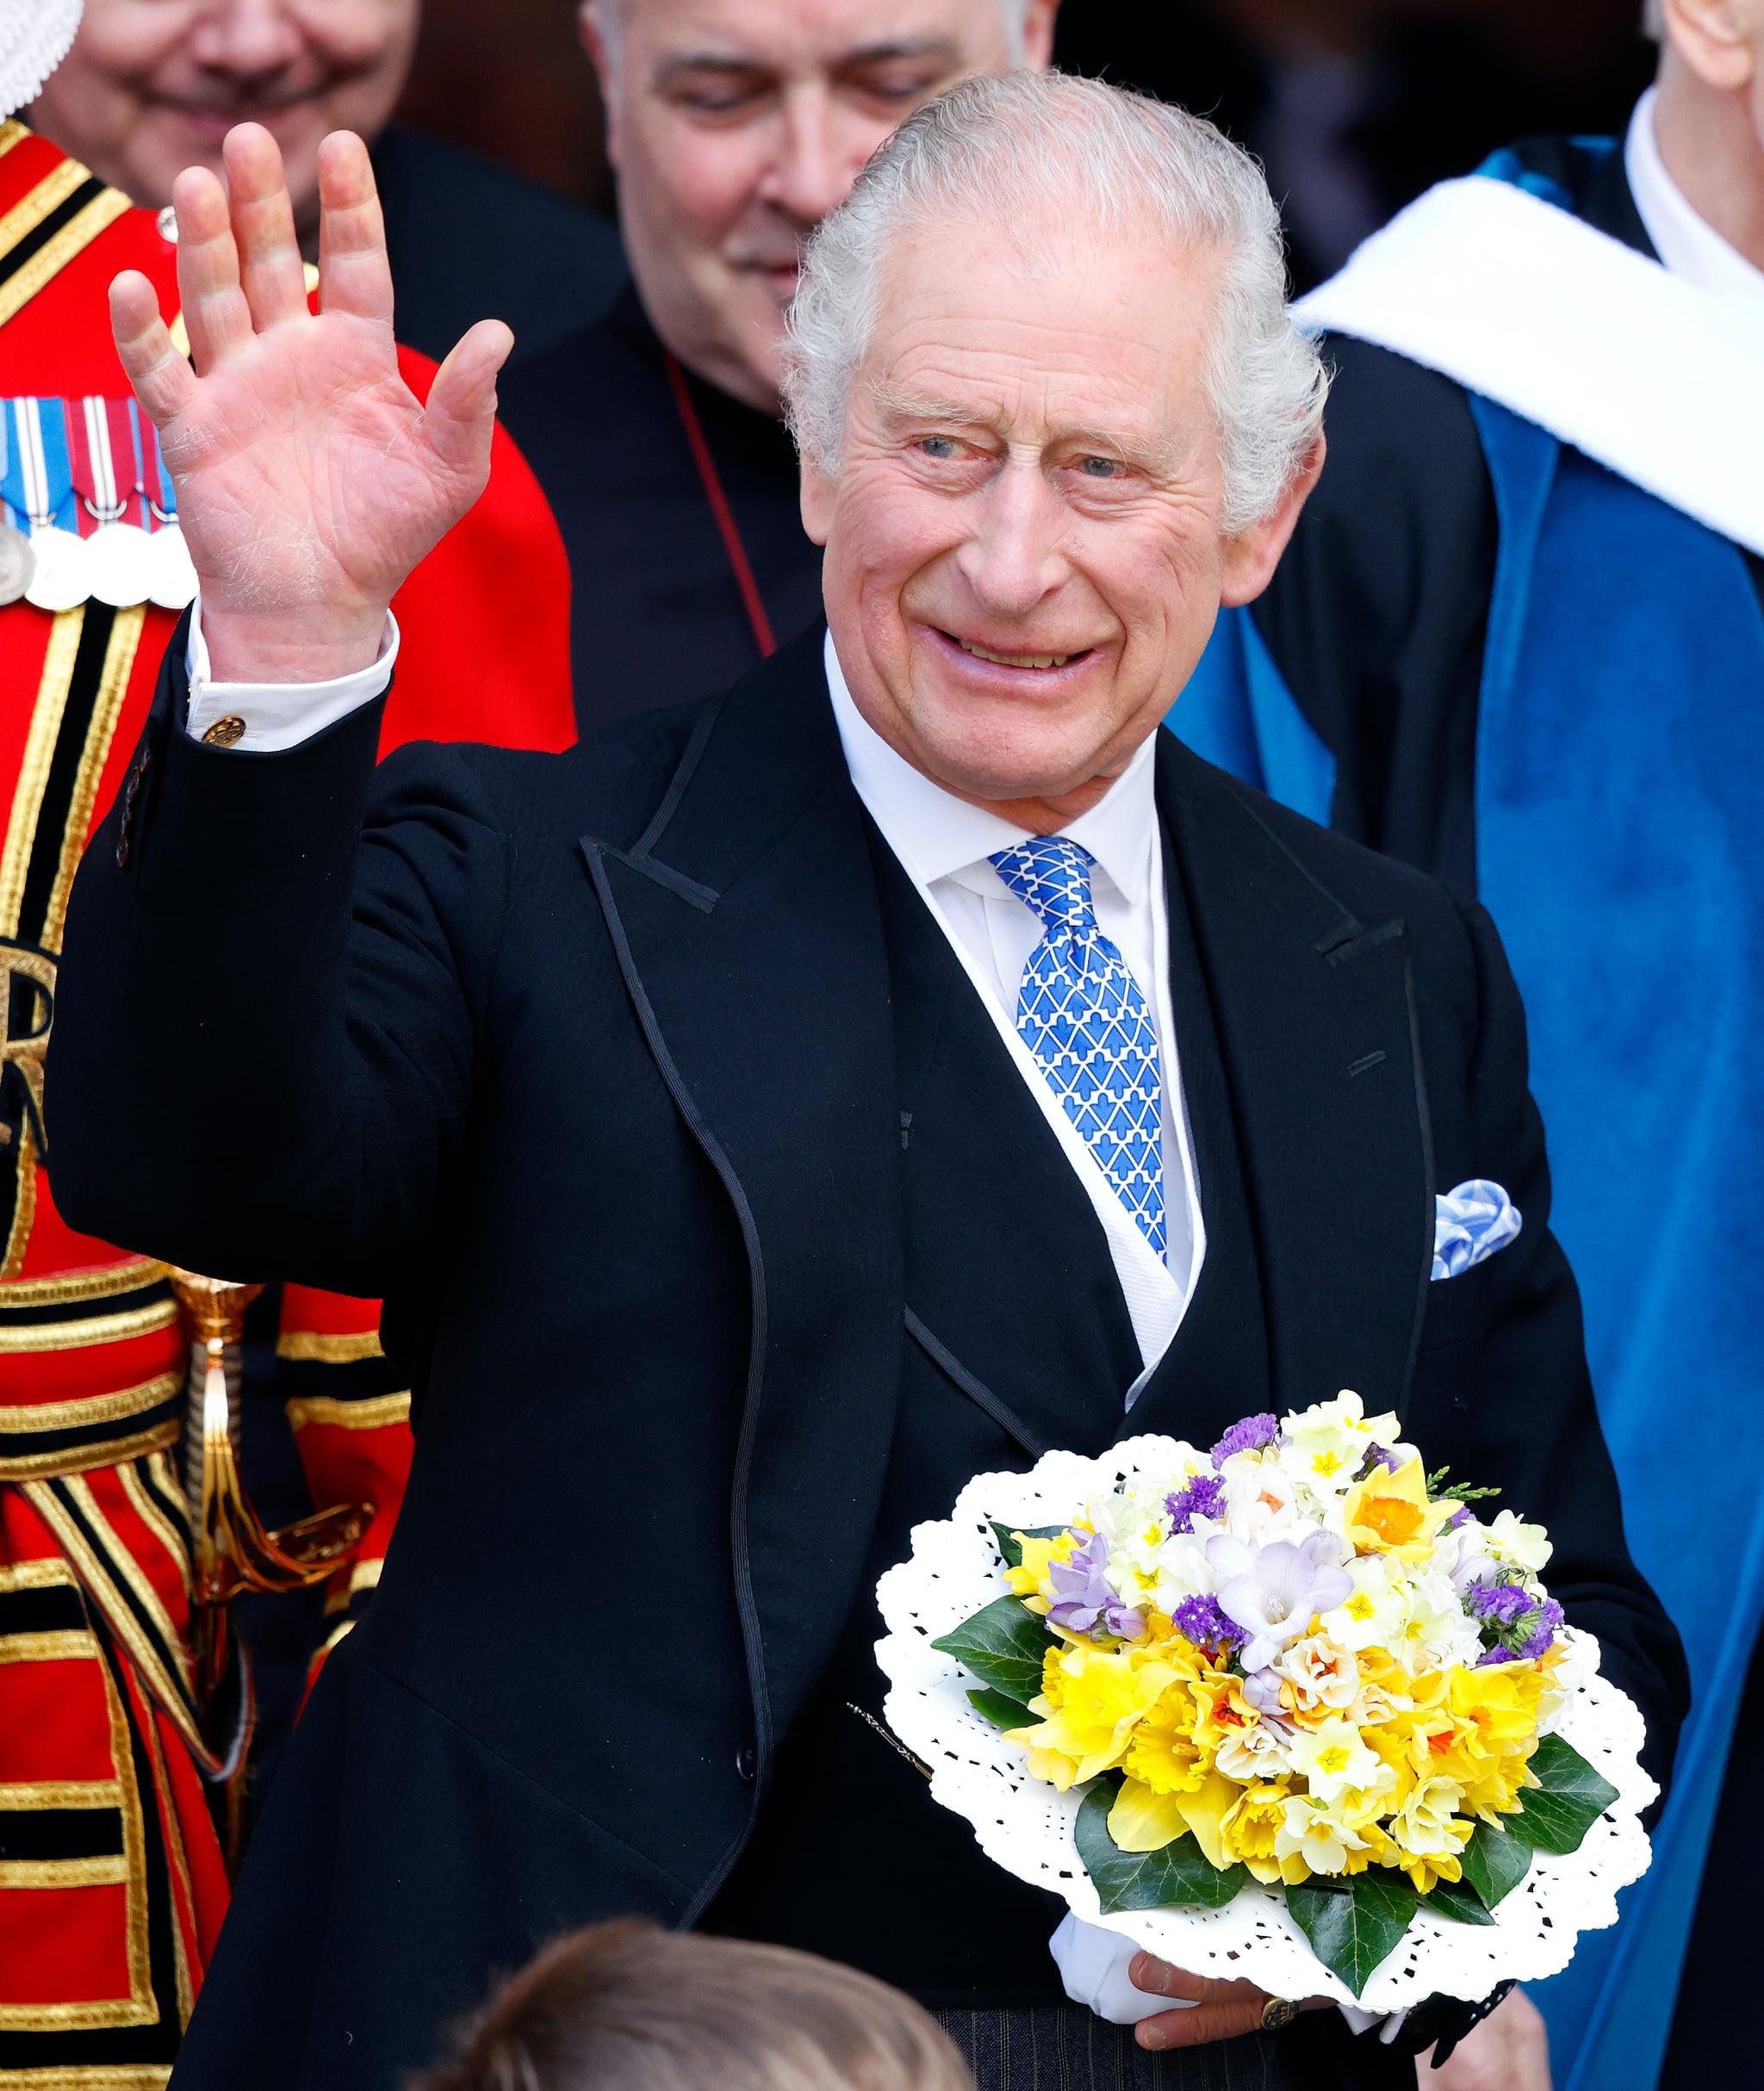 YORK, ROYAUME-UNI - 06 AVRIL : (SOUS EMBARGO POUR LA PUBLICATION DANS LES JOURNAUX BRITANNIQUES JUSQU'À 24 HEURES APRÈS LA DATE ET L'HEURE DE CRÉATION) Le roi Charles III (tenant le bouquet de bouquet traditionnel) assiste au Royal Maundy Service à York Minster le 6 avril 2023 à York, Angleterre.  Pendant le service, Sa Majesté, pour la première fois depuis qu'il est devenu monarque et gouverneur suprême de l'Église d'Angleterre, a présenté 74 hommes et 74 femmes (signifiant l'âge du monarque) avec Maundy Money pour les remercier de leur travail au sein de l'Église.  Chaque récipiendaire reçoit deux bourses, une rouge et une blanche.  Le sac à main blanc contient un ensemble de pièces de monnaie en argent spécialement frappées d'une valeur équivalente à l'âge du monarque.  La bourse rouge contient deux pièces commémoratives symbolisant le don historique de nourriture et de vêtements du Souverain.  (Photo de Max Mumby/Indigo/Getty Images)